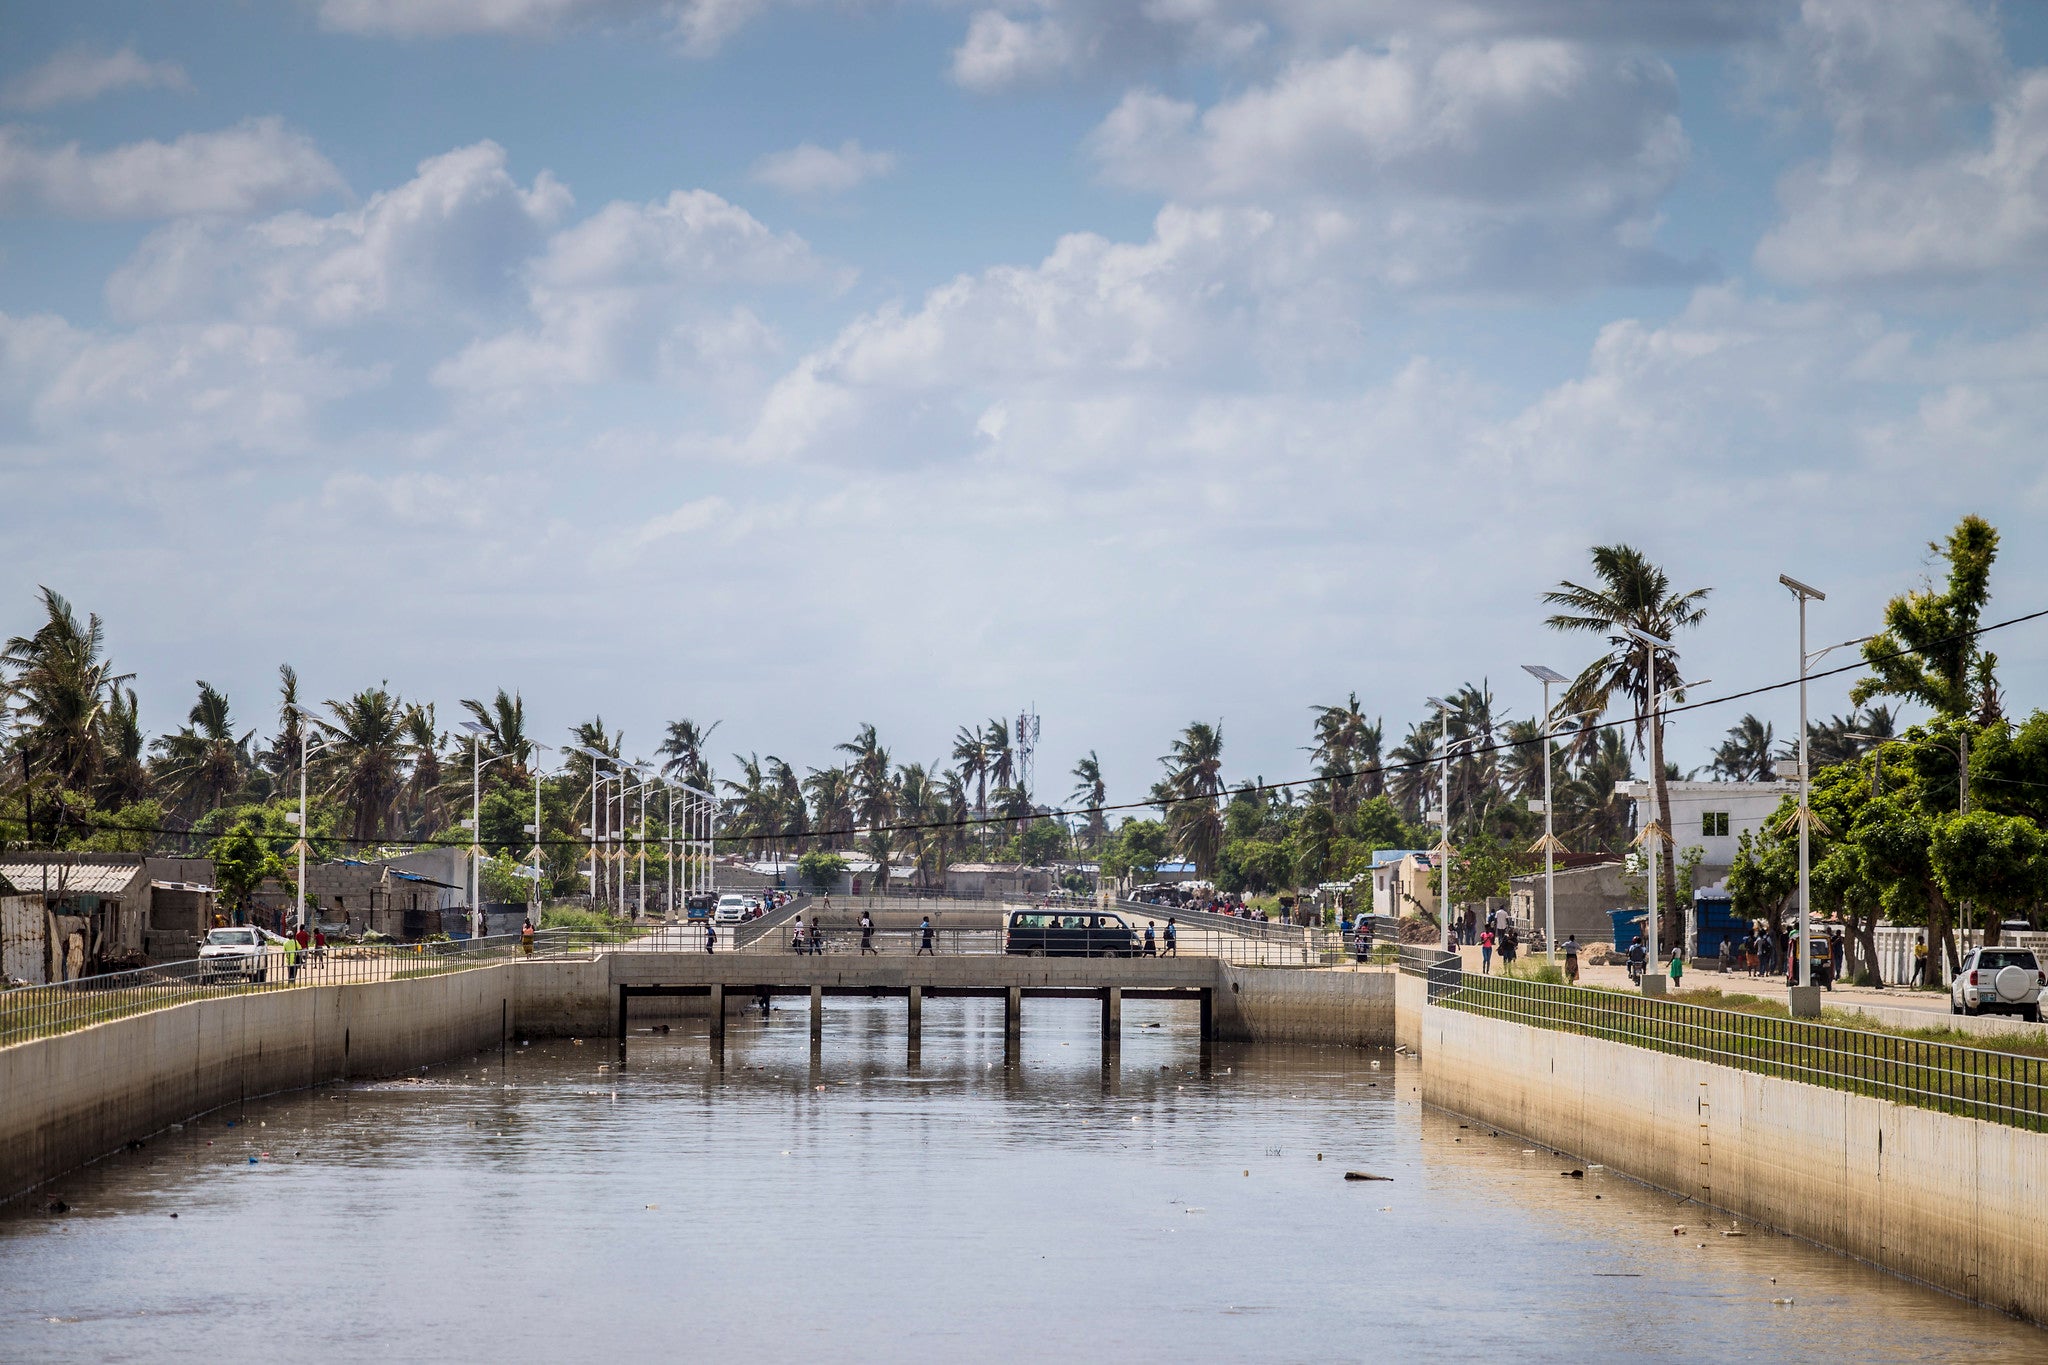 Dans la ville de Beira au Mozambique, le projet Villes et changement climatique financé par l'IDA a permis la réhabilitation/construction de 11 km de canaux de drainage, l'installation de stations de contrôle des inondations et la construction d'un grand bassin de rétention. Ces efforts ont contribué à réduire le risque d'inondation dans la ville, comme on a pu le constater lors du passage du cyclone Idai. Photo : © Sarah Farhat/Banque mondiale